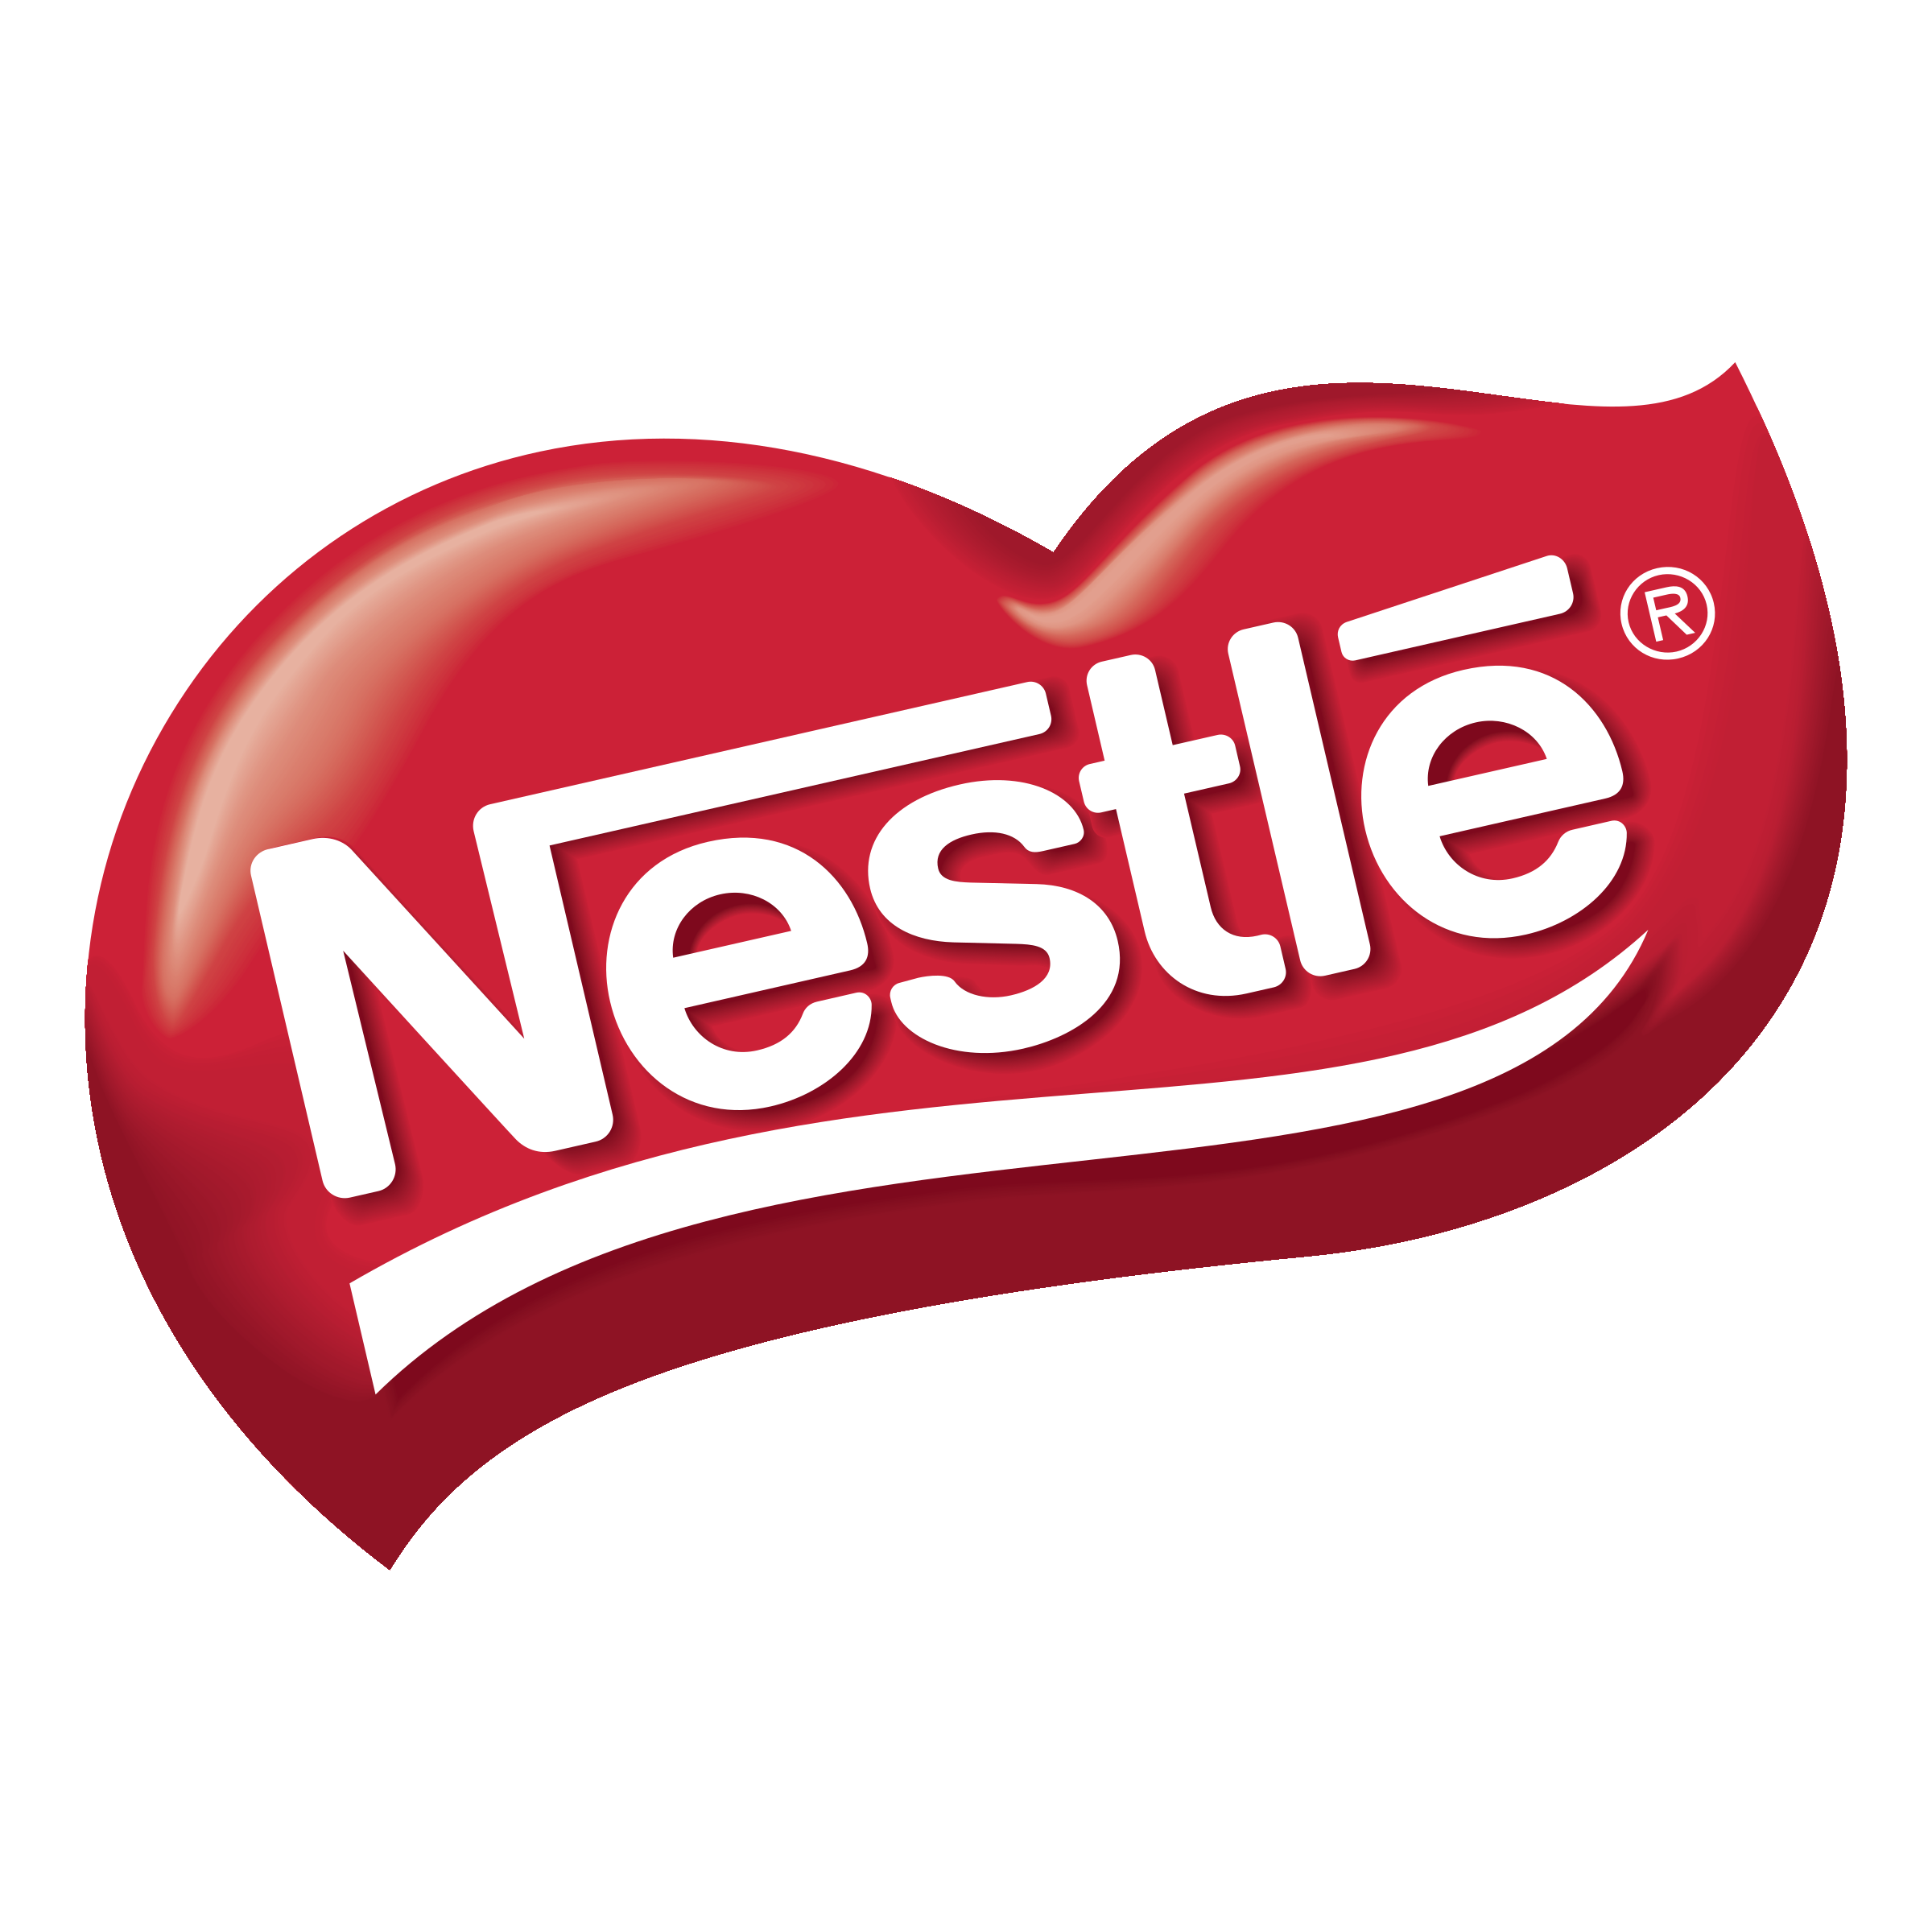 nestle-8-logo-png-transparent.png